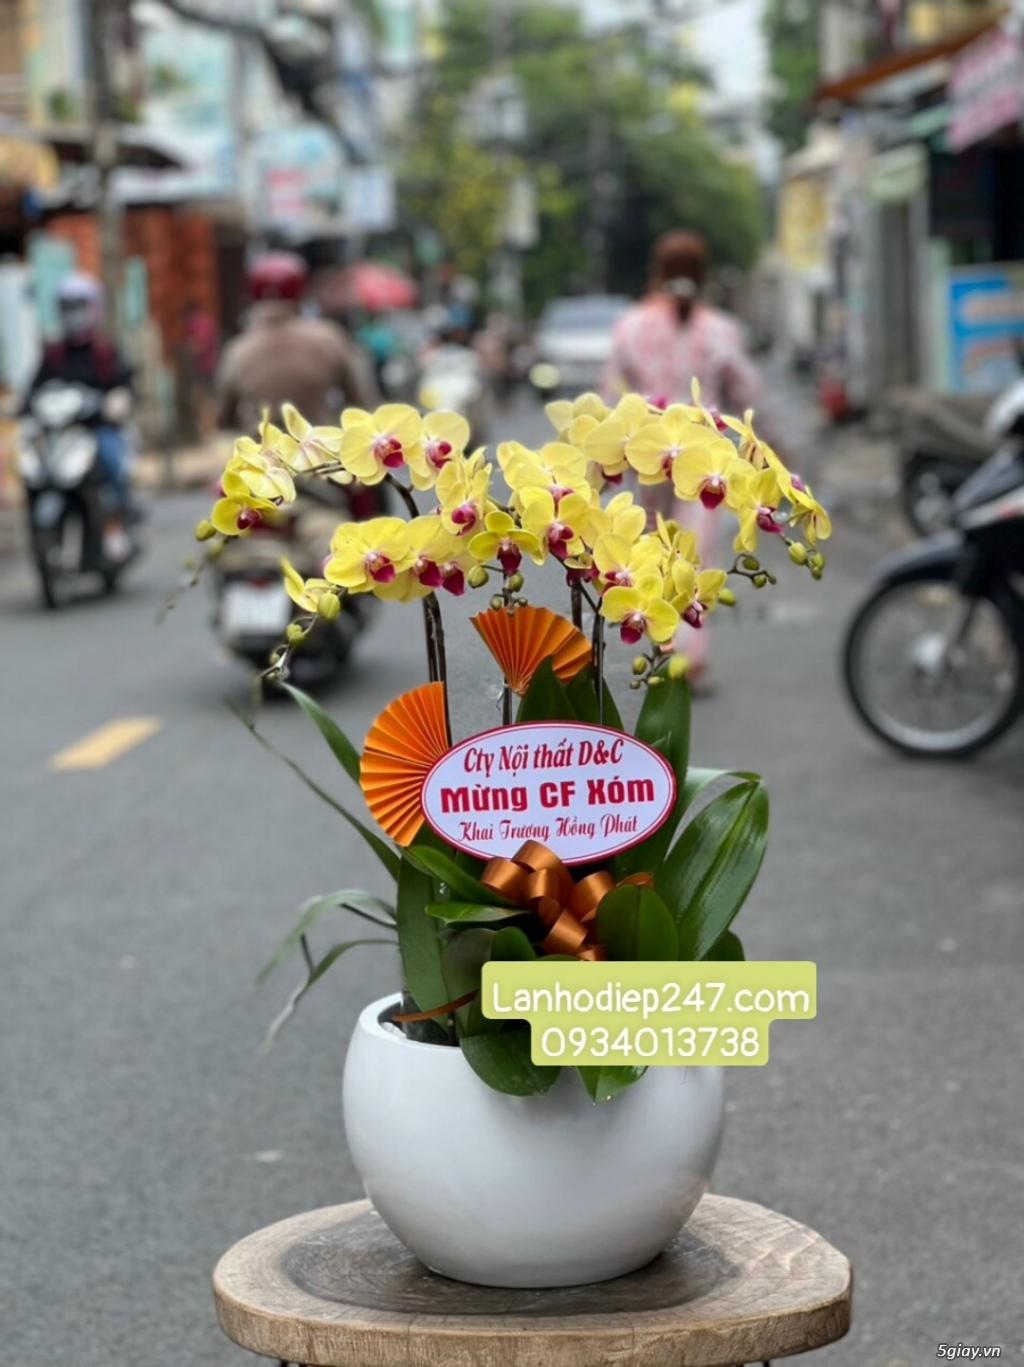 Shop Lan Hồ Điệp Sài Gòn 247 điện hoa uy tín toàn quốc 0934013738 - 11